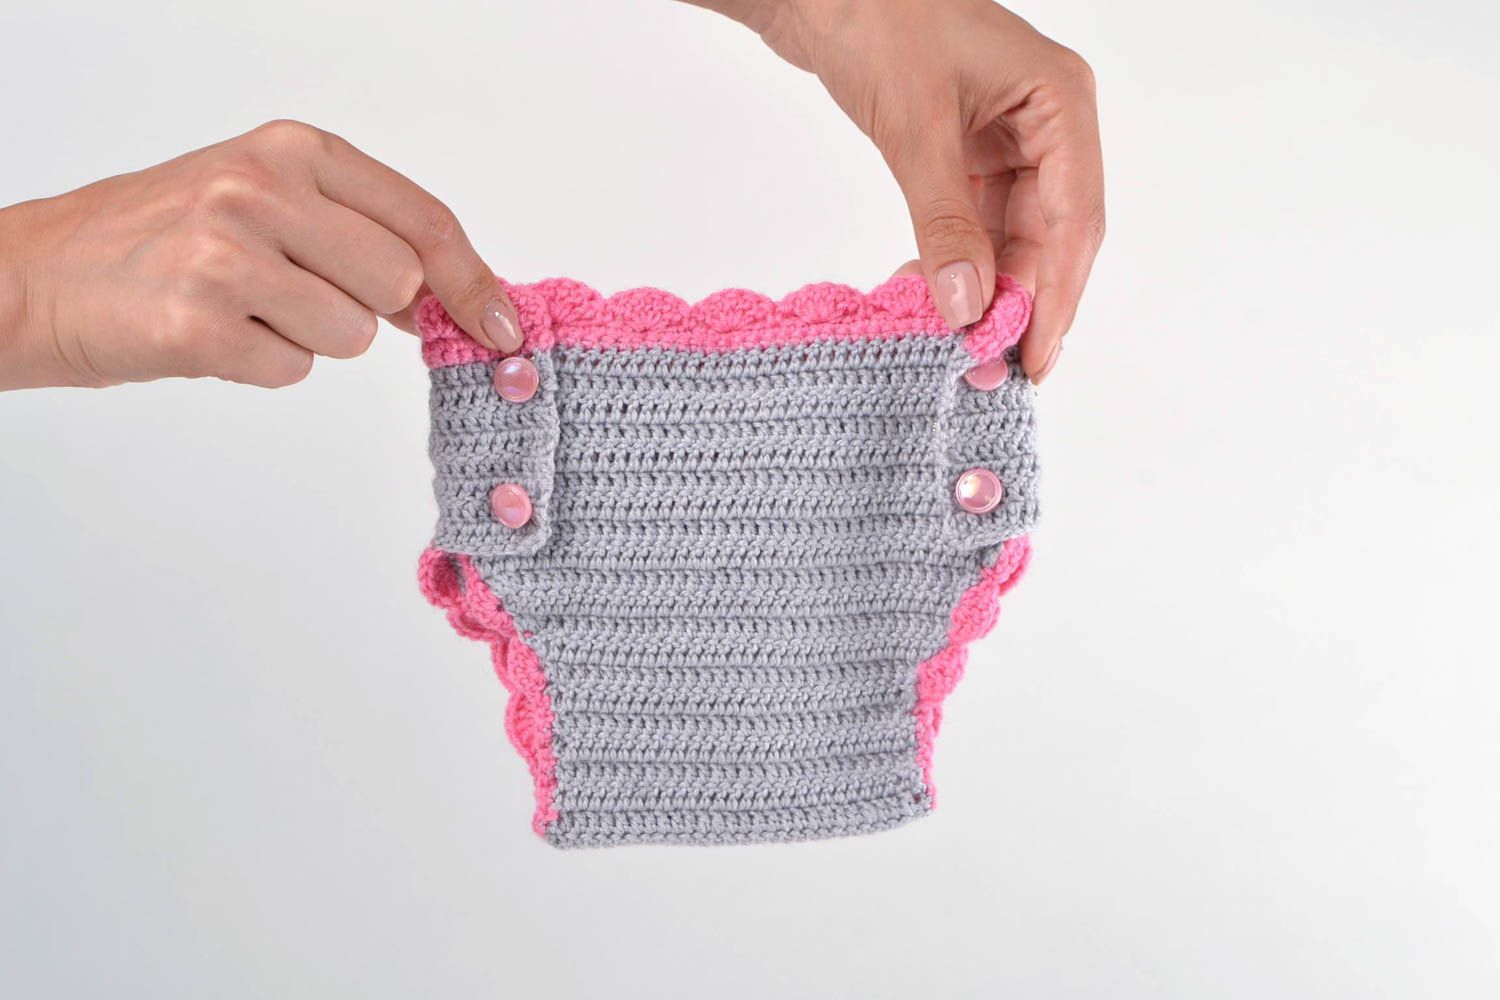 Handmade panties designer panties unusual pants crochet panties gift for baby photo 2